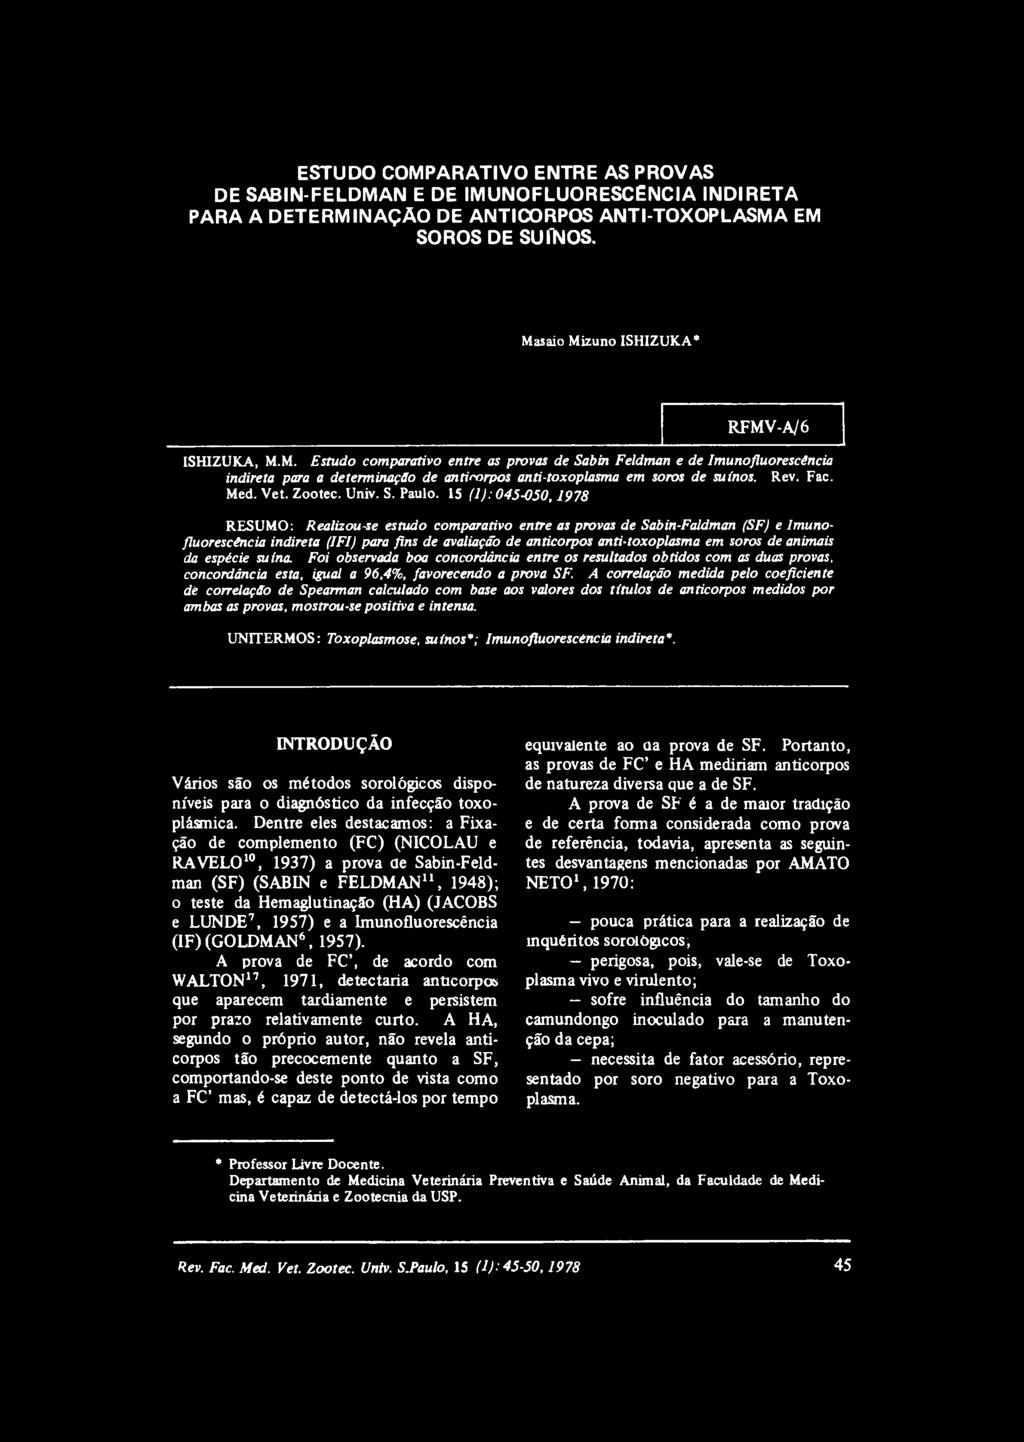 15 (1): 045-050,1978 RESUMO: Realizou-se estudo comparativo entre as provas de Sabin-Faldman (SF) e Imunofluorescéncia indireta (IFI) para fins de avaliação de anticorpos anti-toxoplasma em soros de